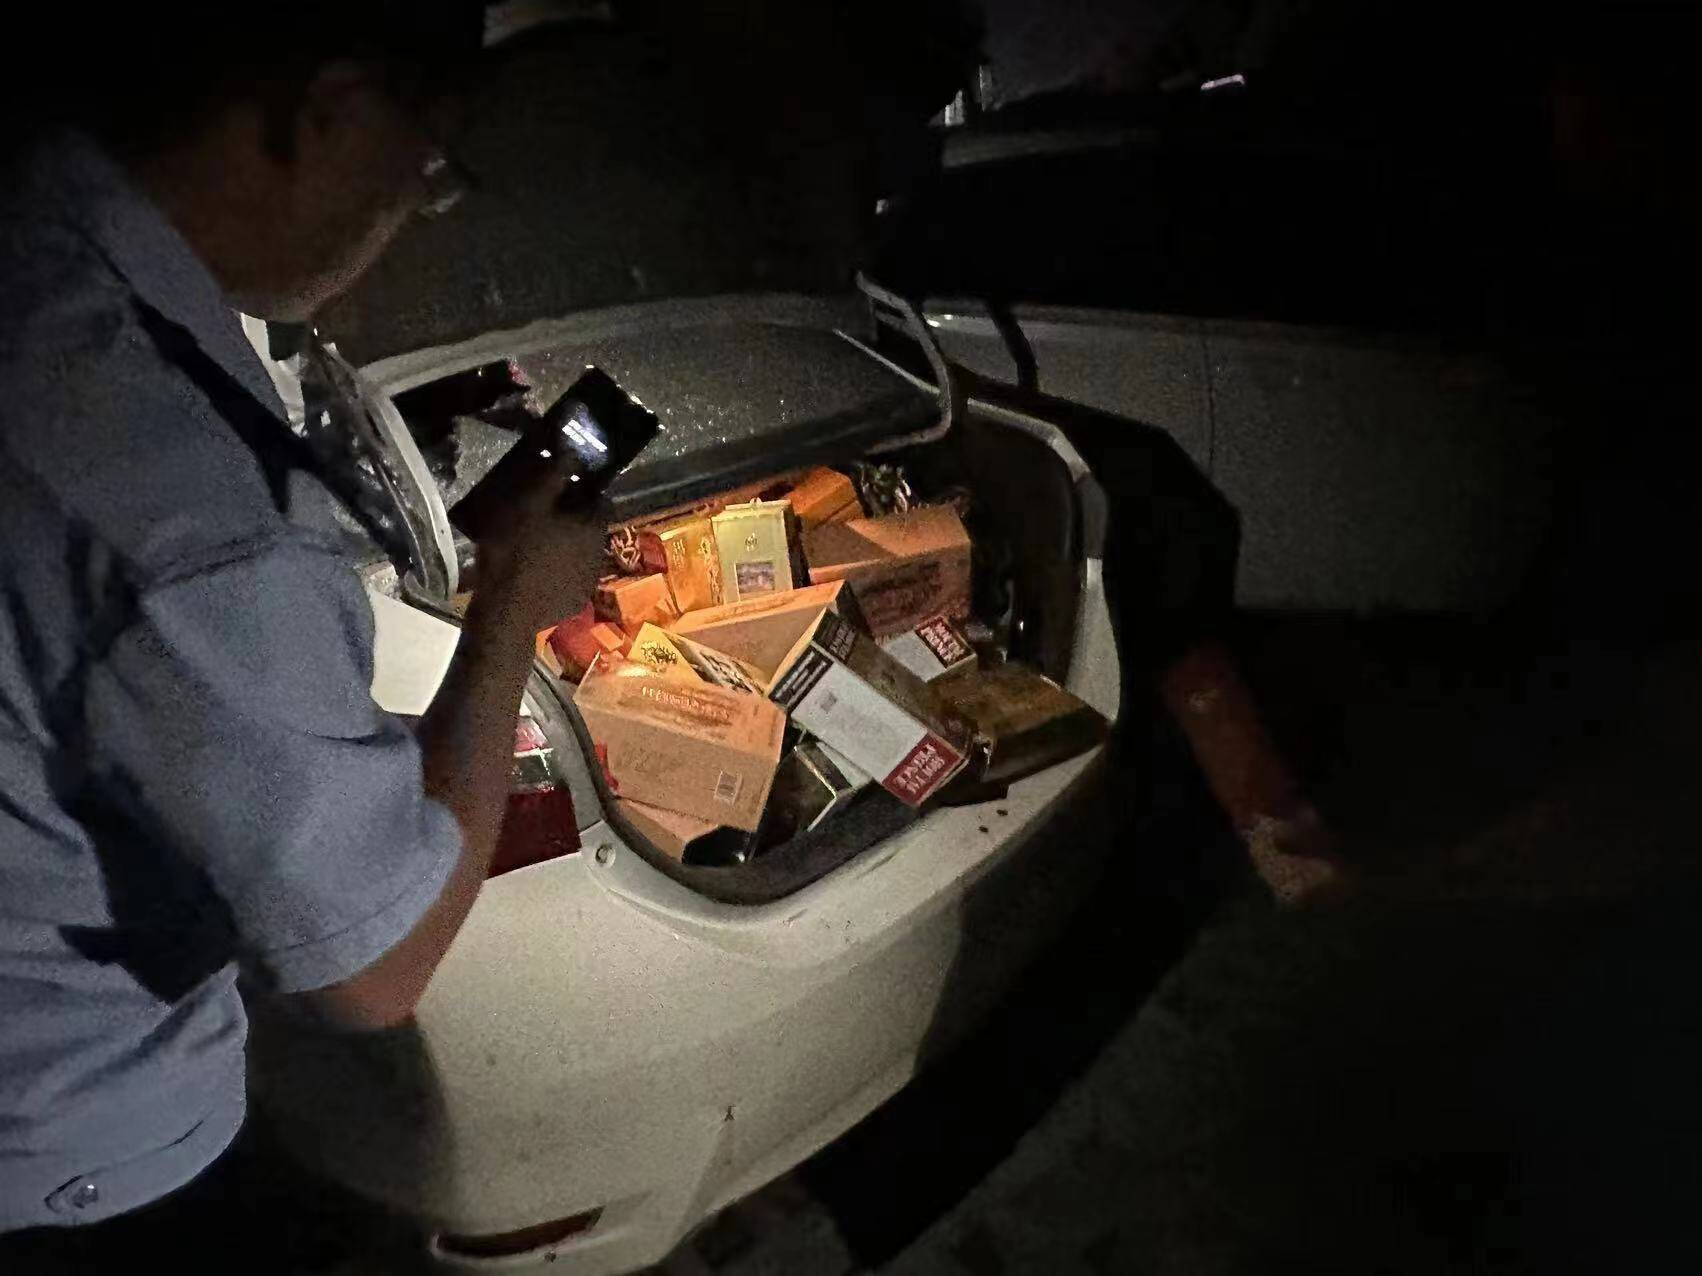 盗窃嫌疑人拒捕 驾车逃逸撞上警车 济南钢城公安民辅警破窗将其控制